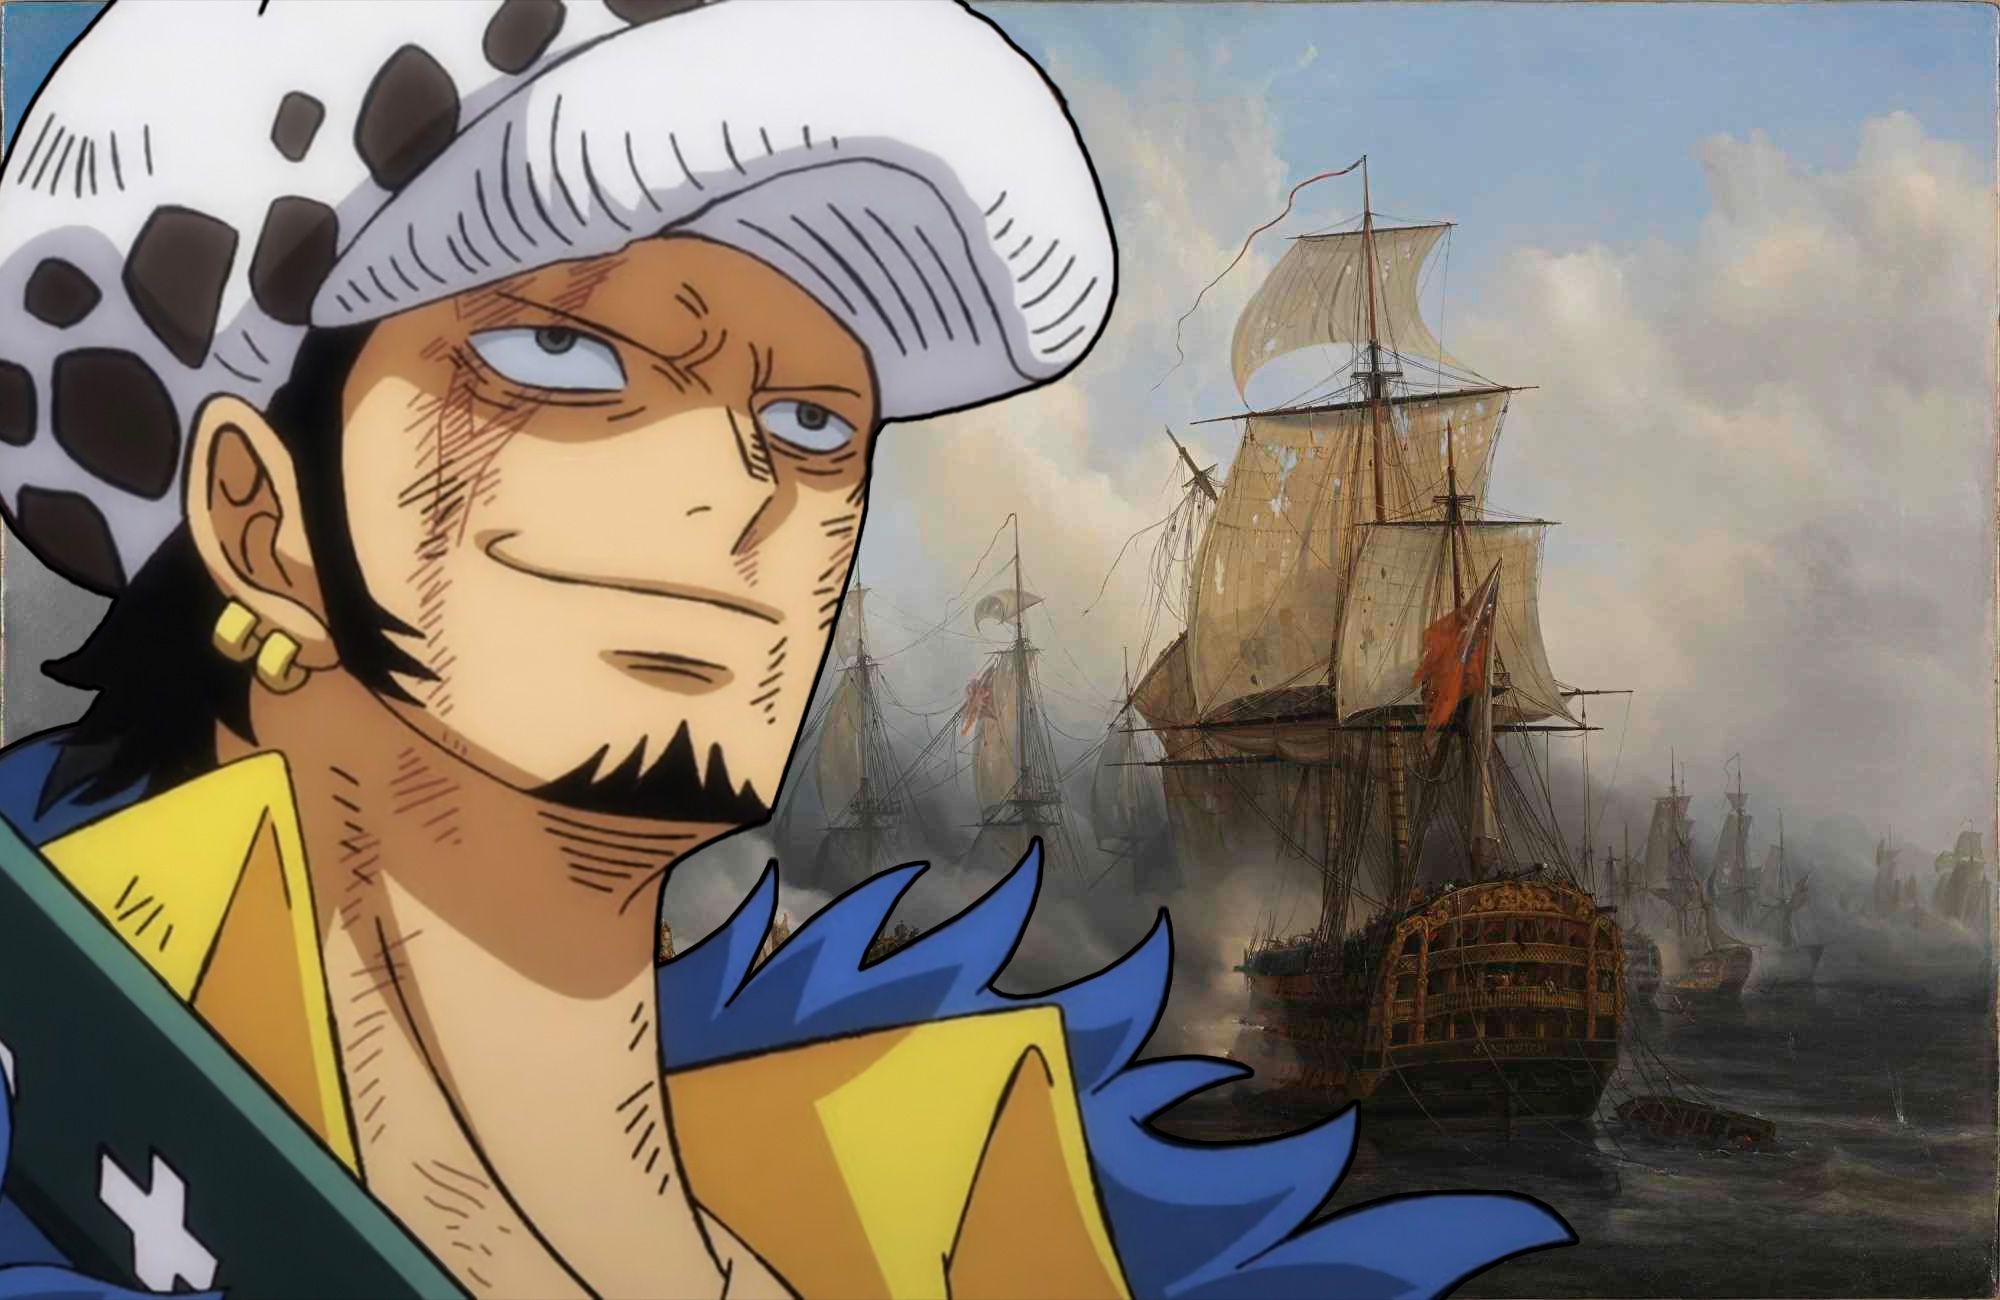 Bandos e outros personagens - One Piece